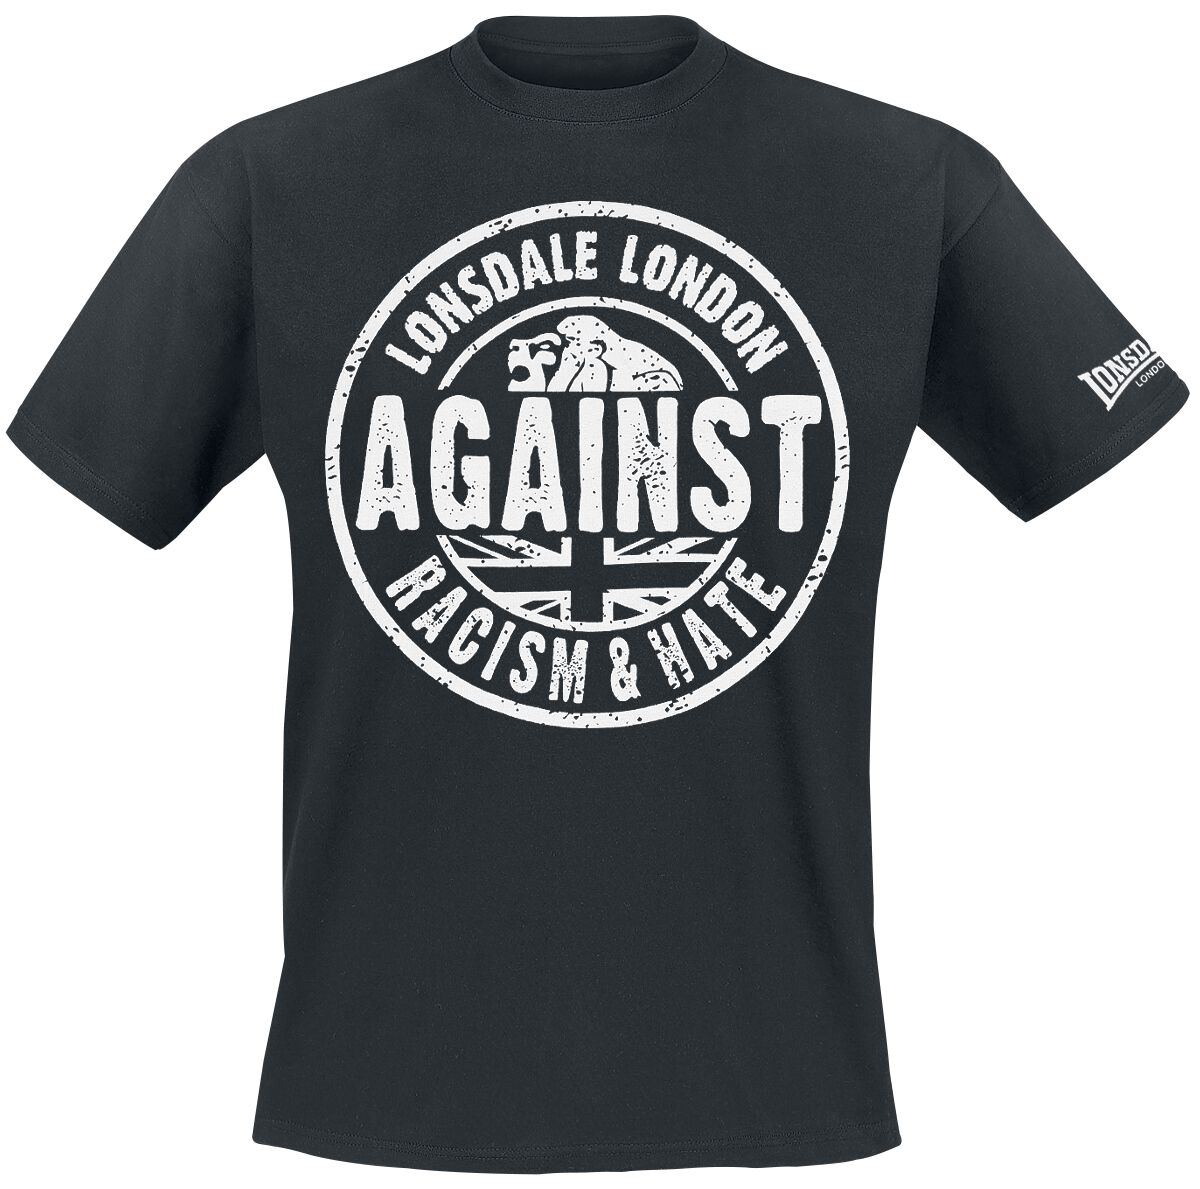 Lonsdale London T-Shirt - Against Racism - S bis 3XL - für Männer - Größe L - schwarz